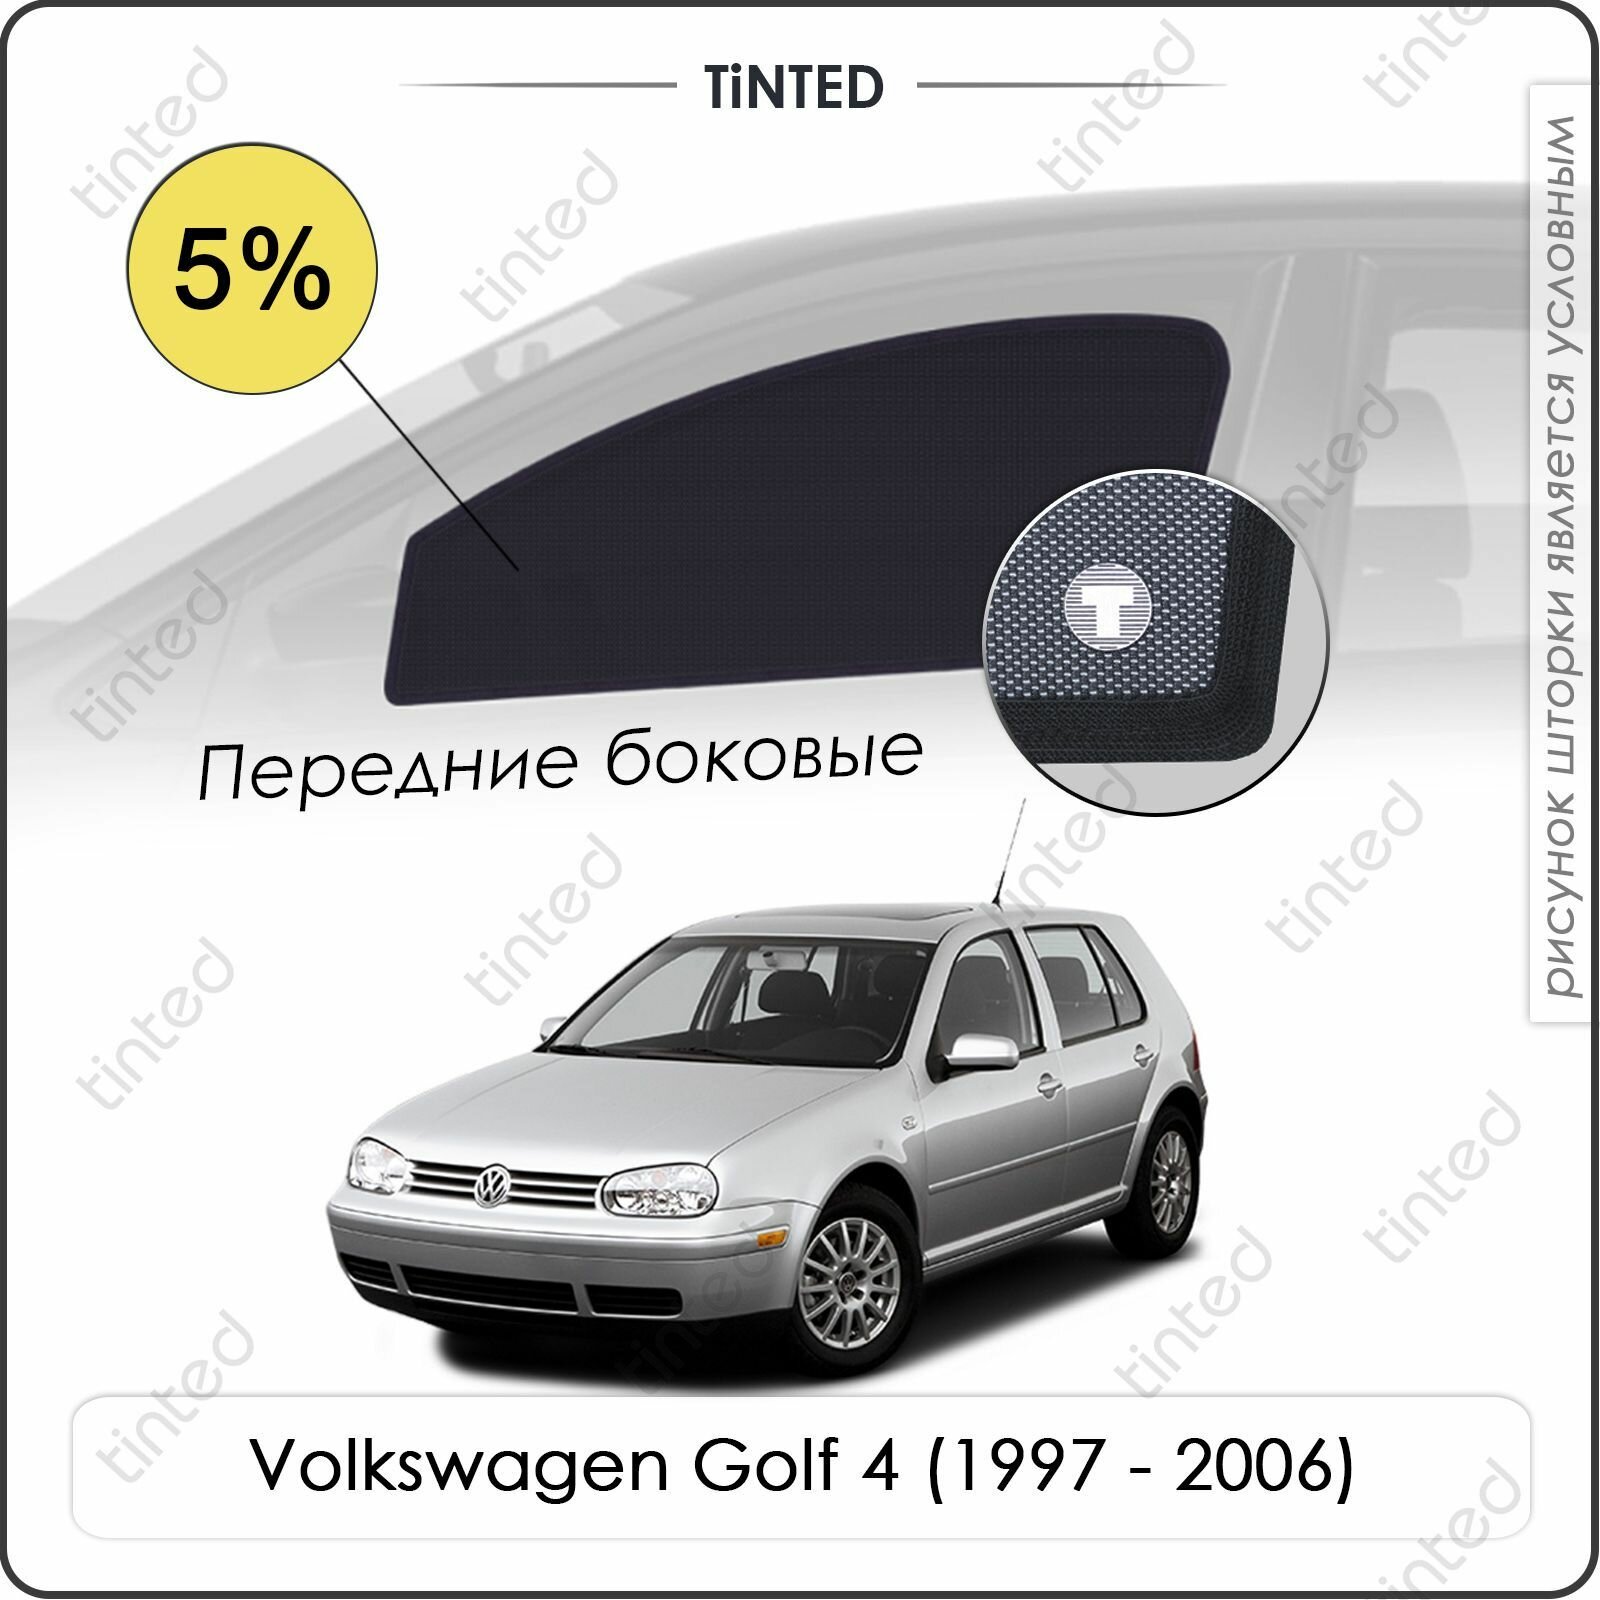 Шторки на автомобиль солнцезащитные Volkswagen Golf 4 Хетчбек 5дв. (1997 - 2006) на задние двери 5% сетки от солнца в машину фольксваген гольф Каркасные автошторки Premium